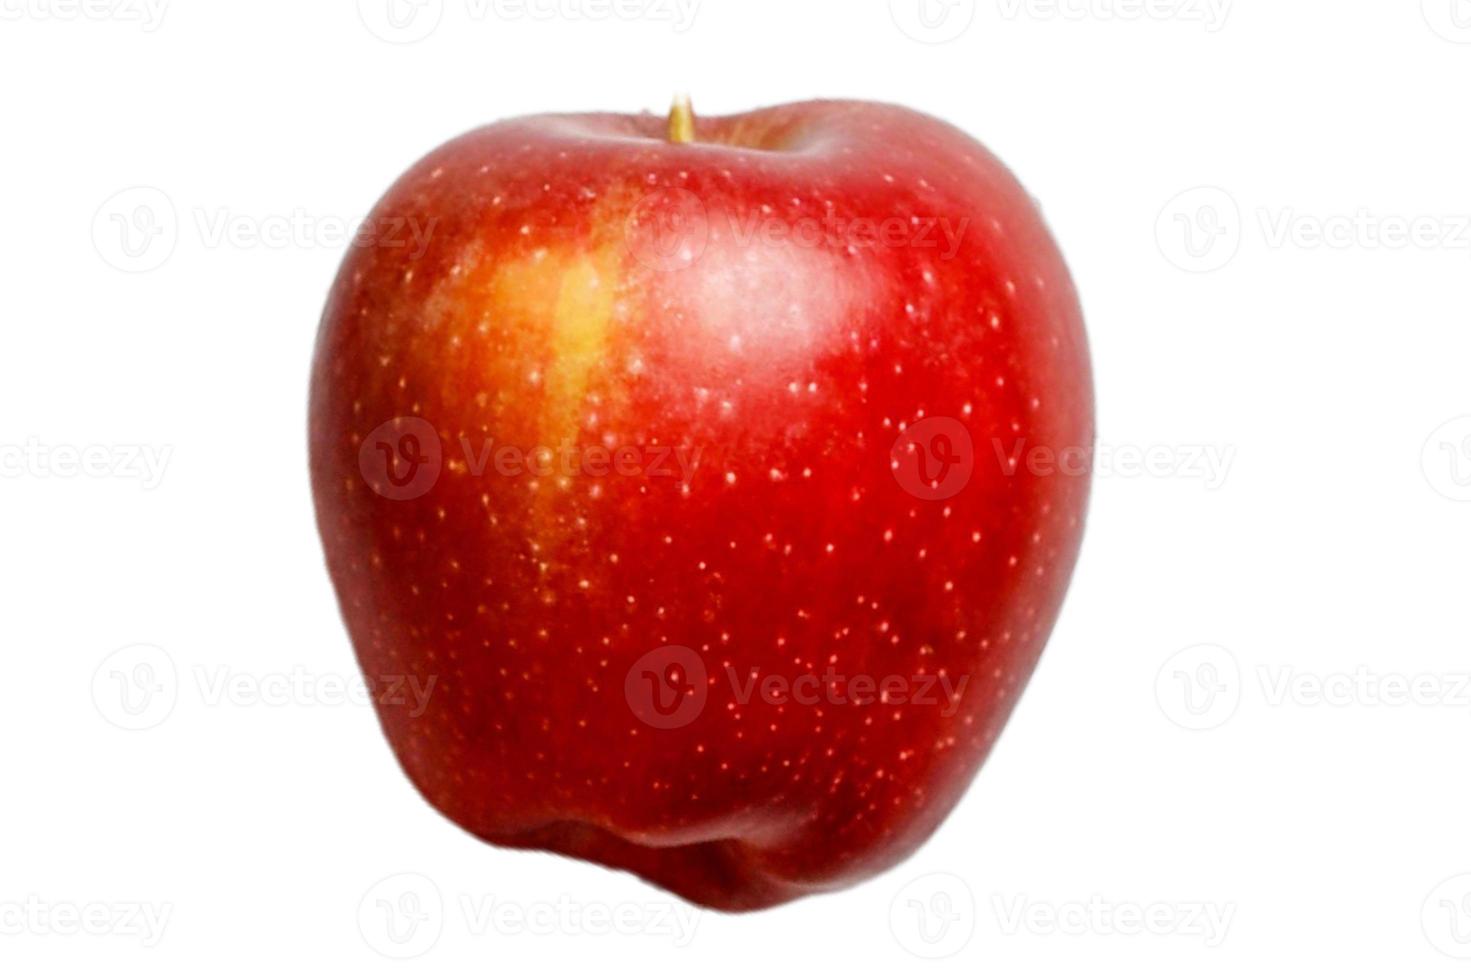 3297 röd äpple frukt isolerat på en transparent bakgrund foto